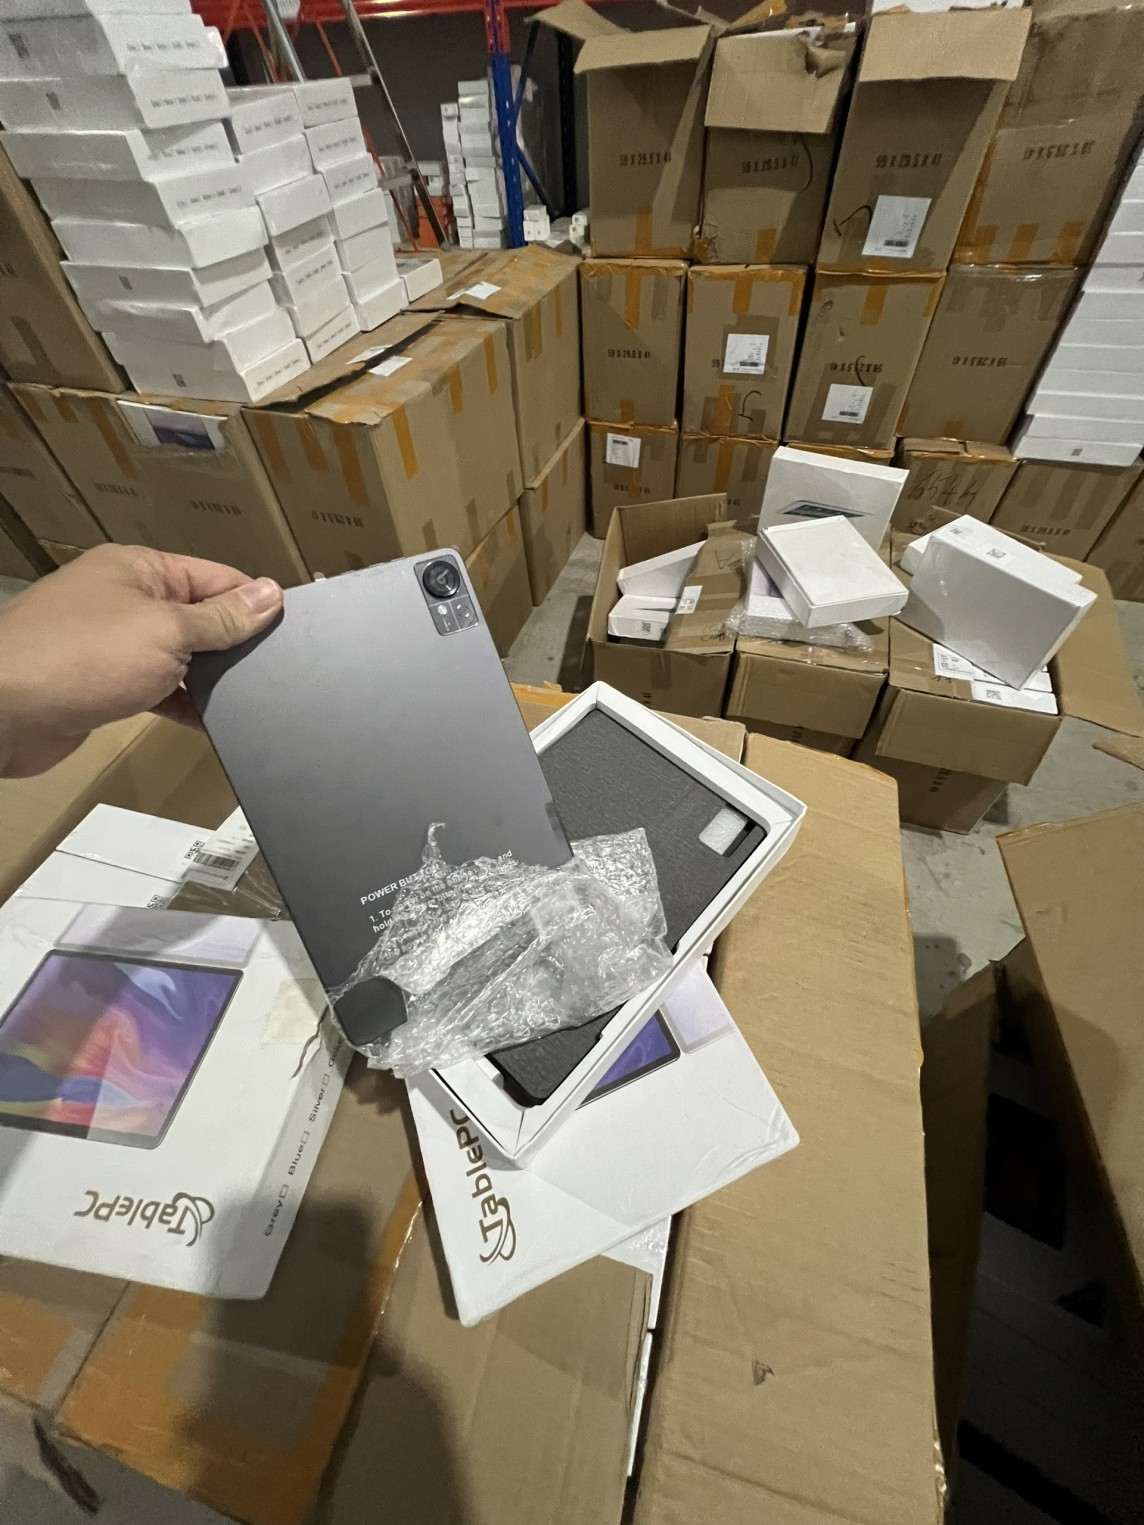 Hàng hóa phát hiện trong kho là thiết bị điện thoại là iphone, ipad mang thương hiệu của Apple cùng các thương hiệu khác có nhiều dấu hiệu vi phạm. Ảnh: Hoàng Giang